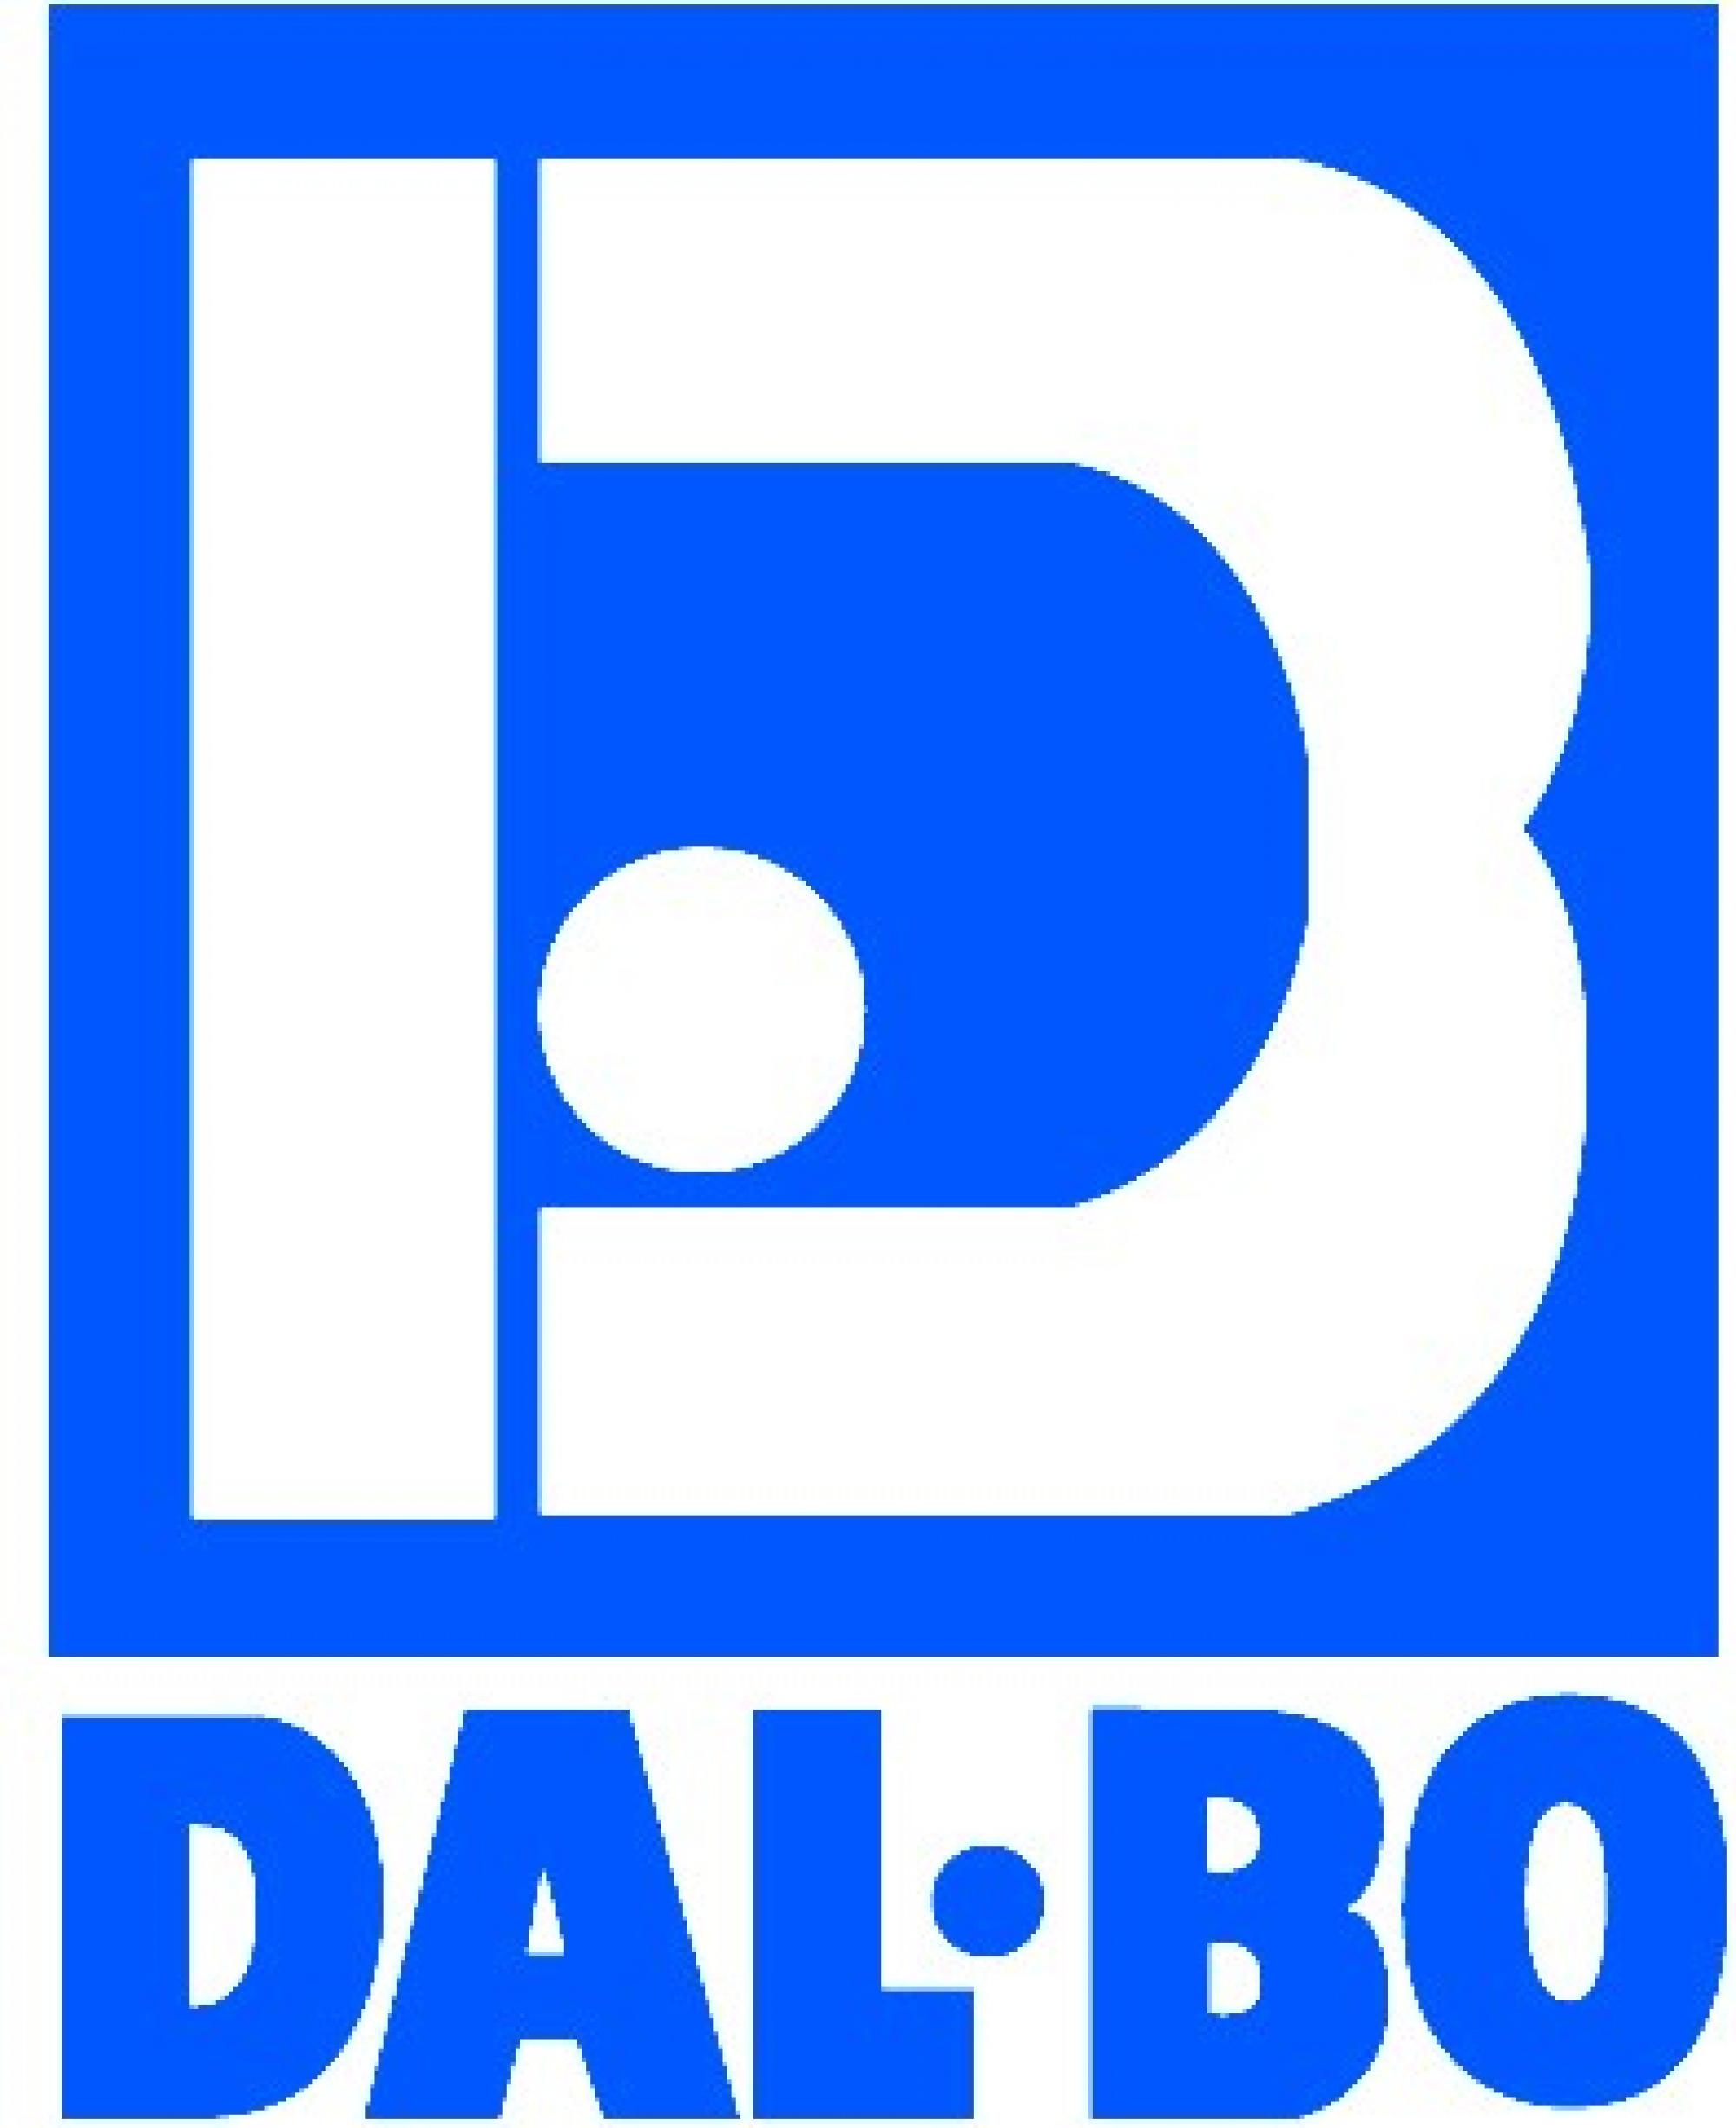 Dalbo